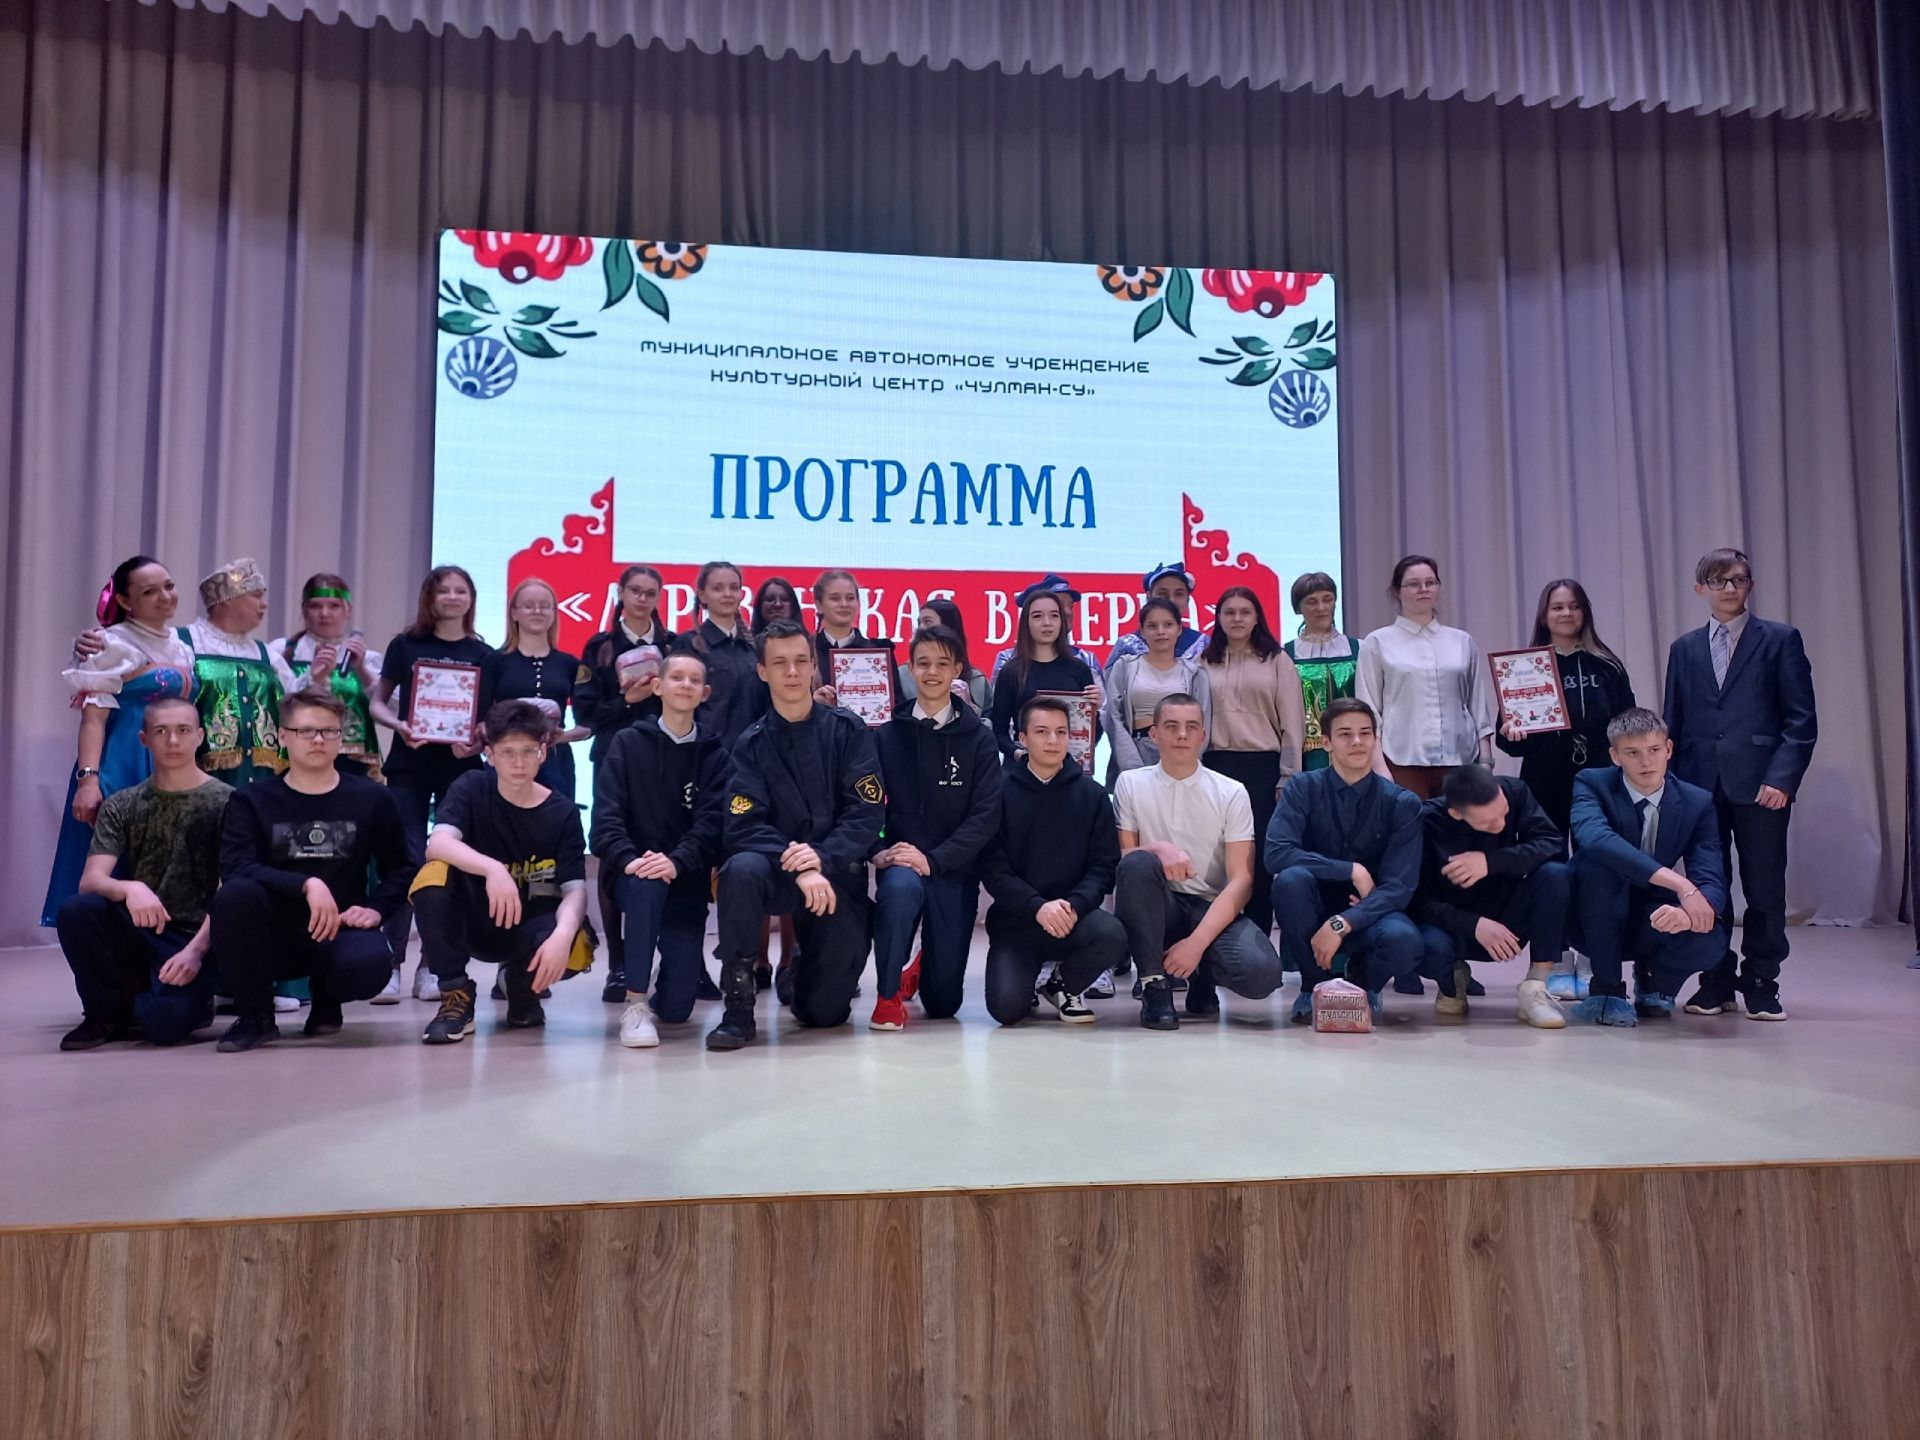 Активисты отряда Форпост заняли 1 место в программе «Деревенская вечерка»